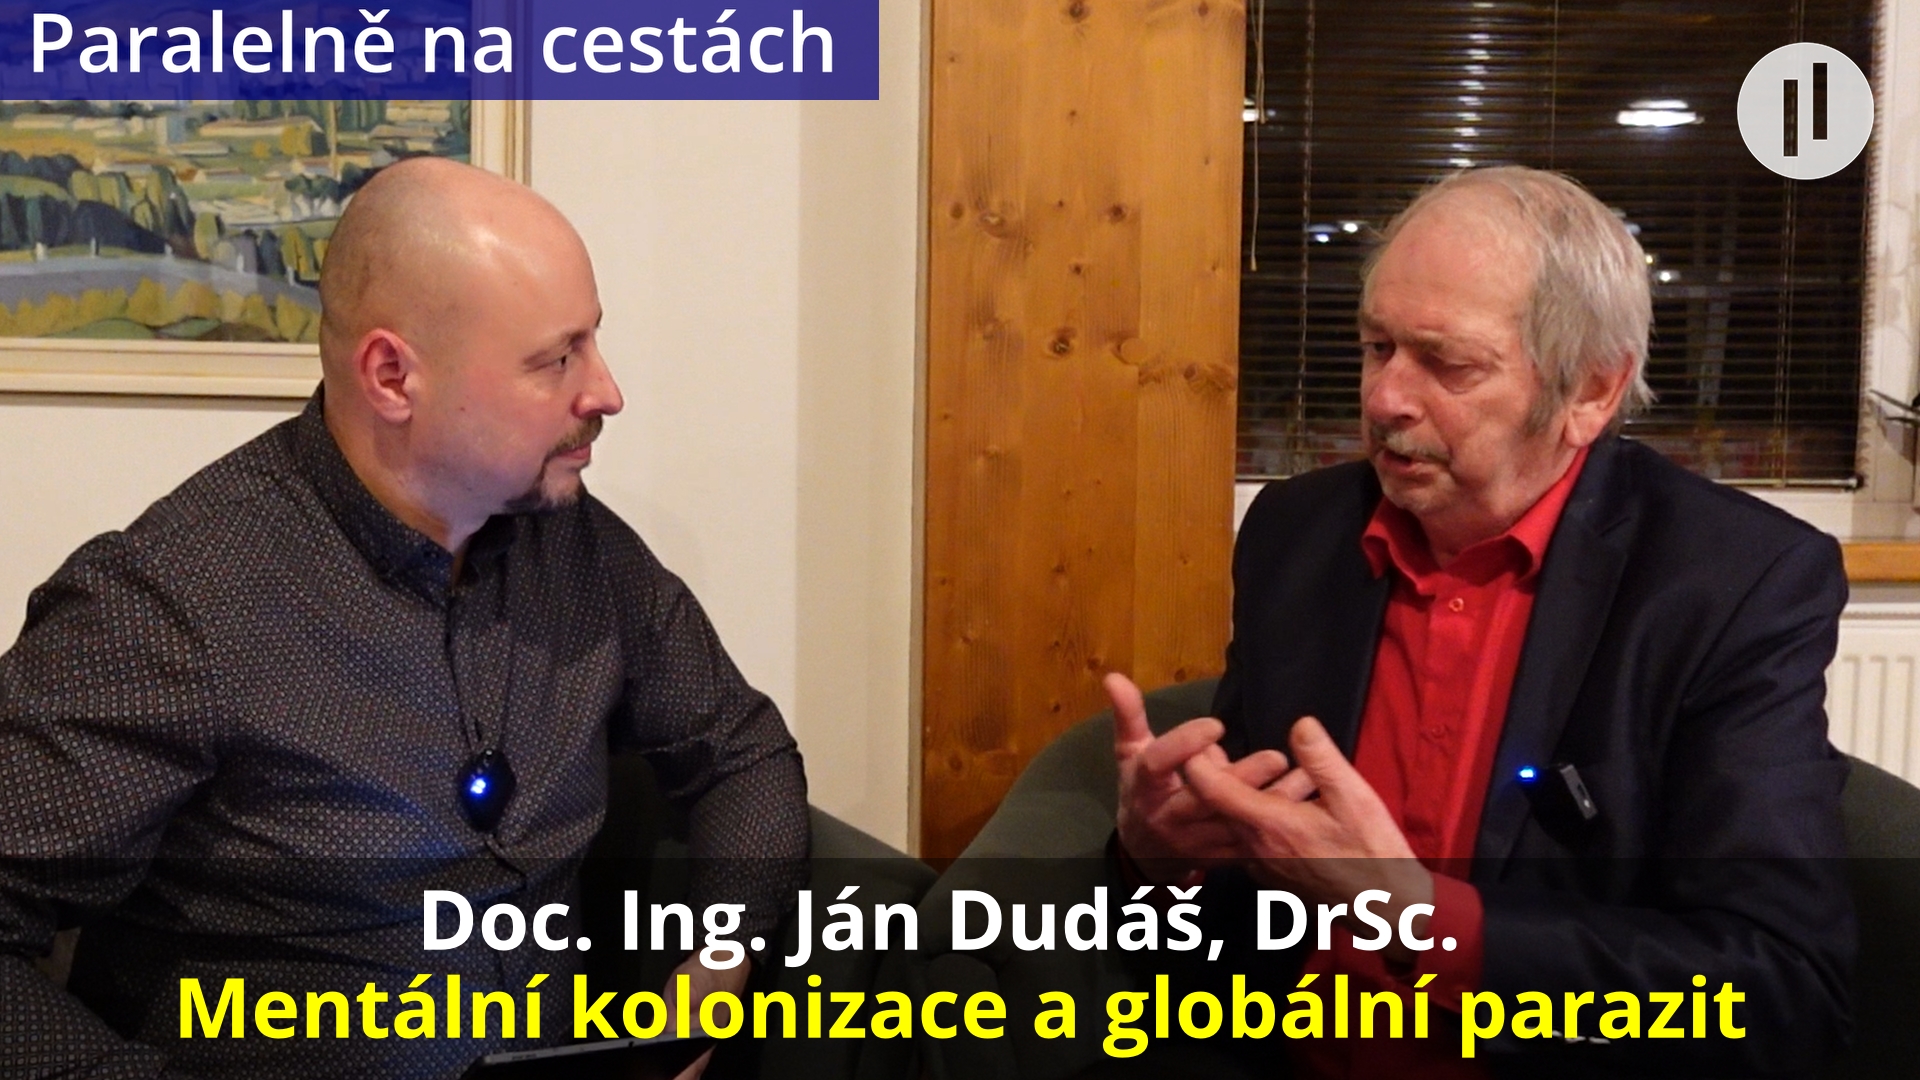 Doc. Ing. Ján Dudáš, DrSc. – Mentální kolonizace pod taktovkou globálního parazita. Jak se jí ubránit?